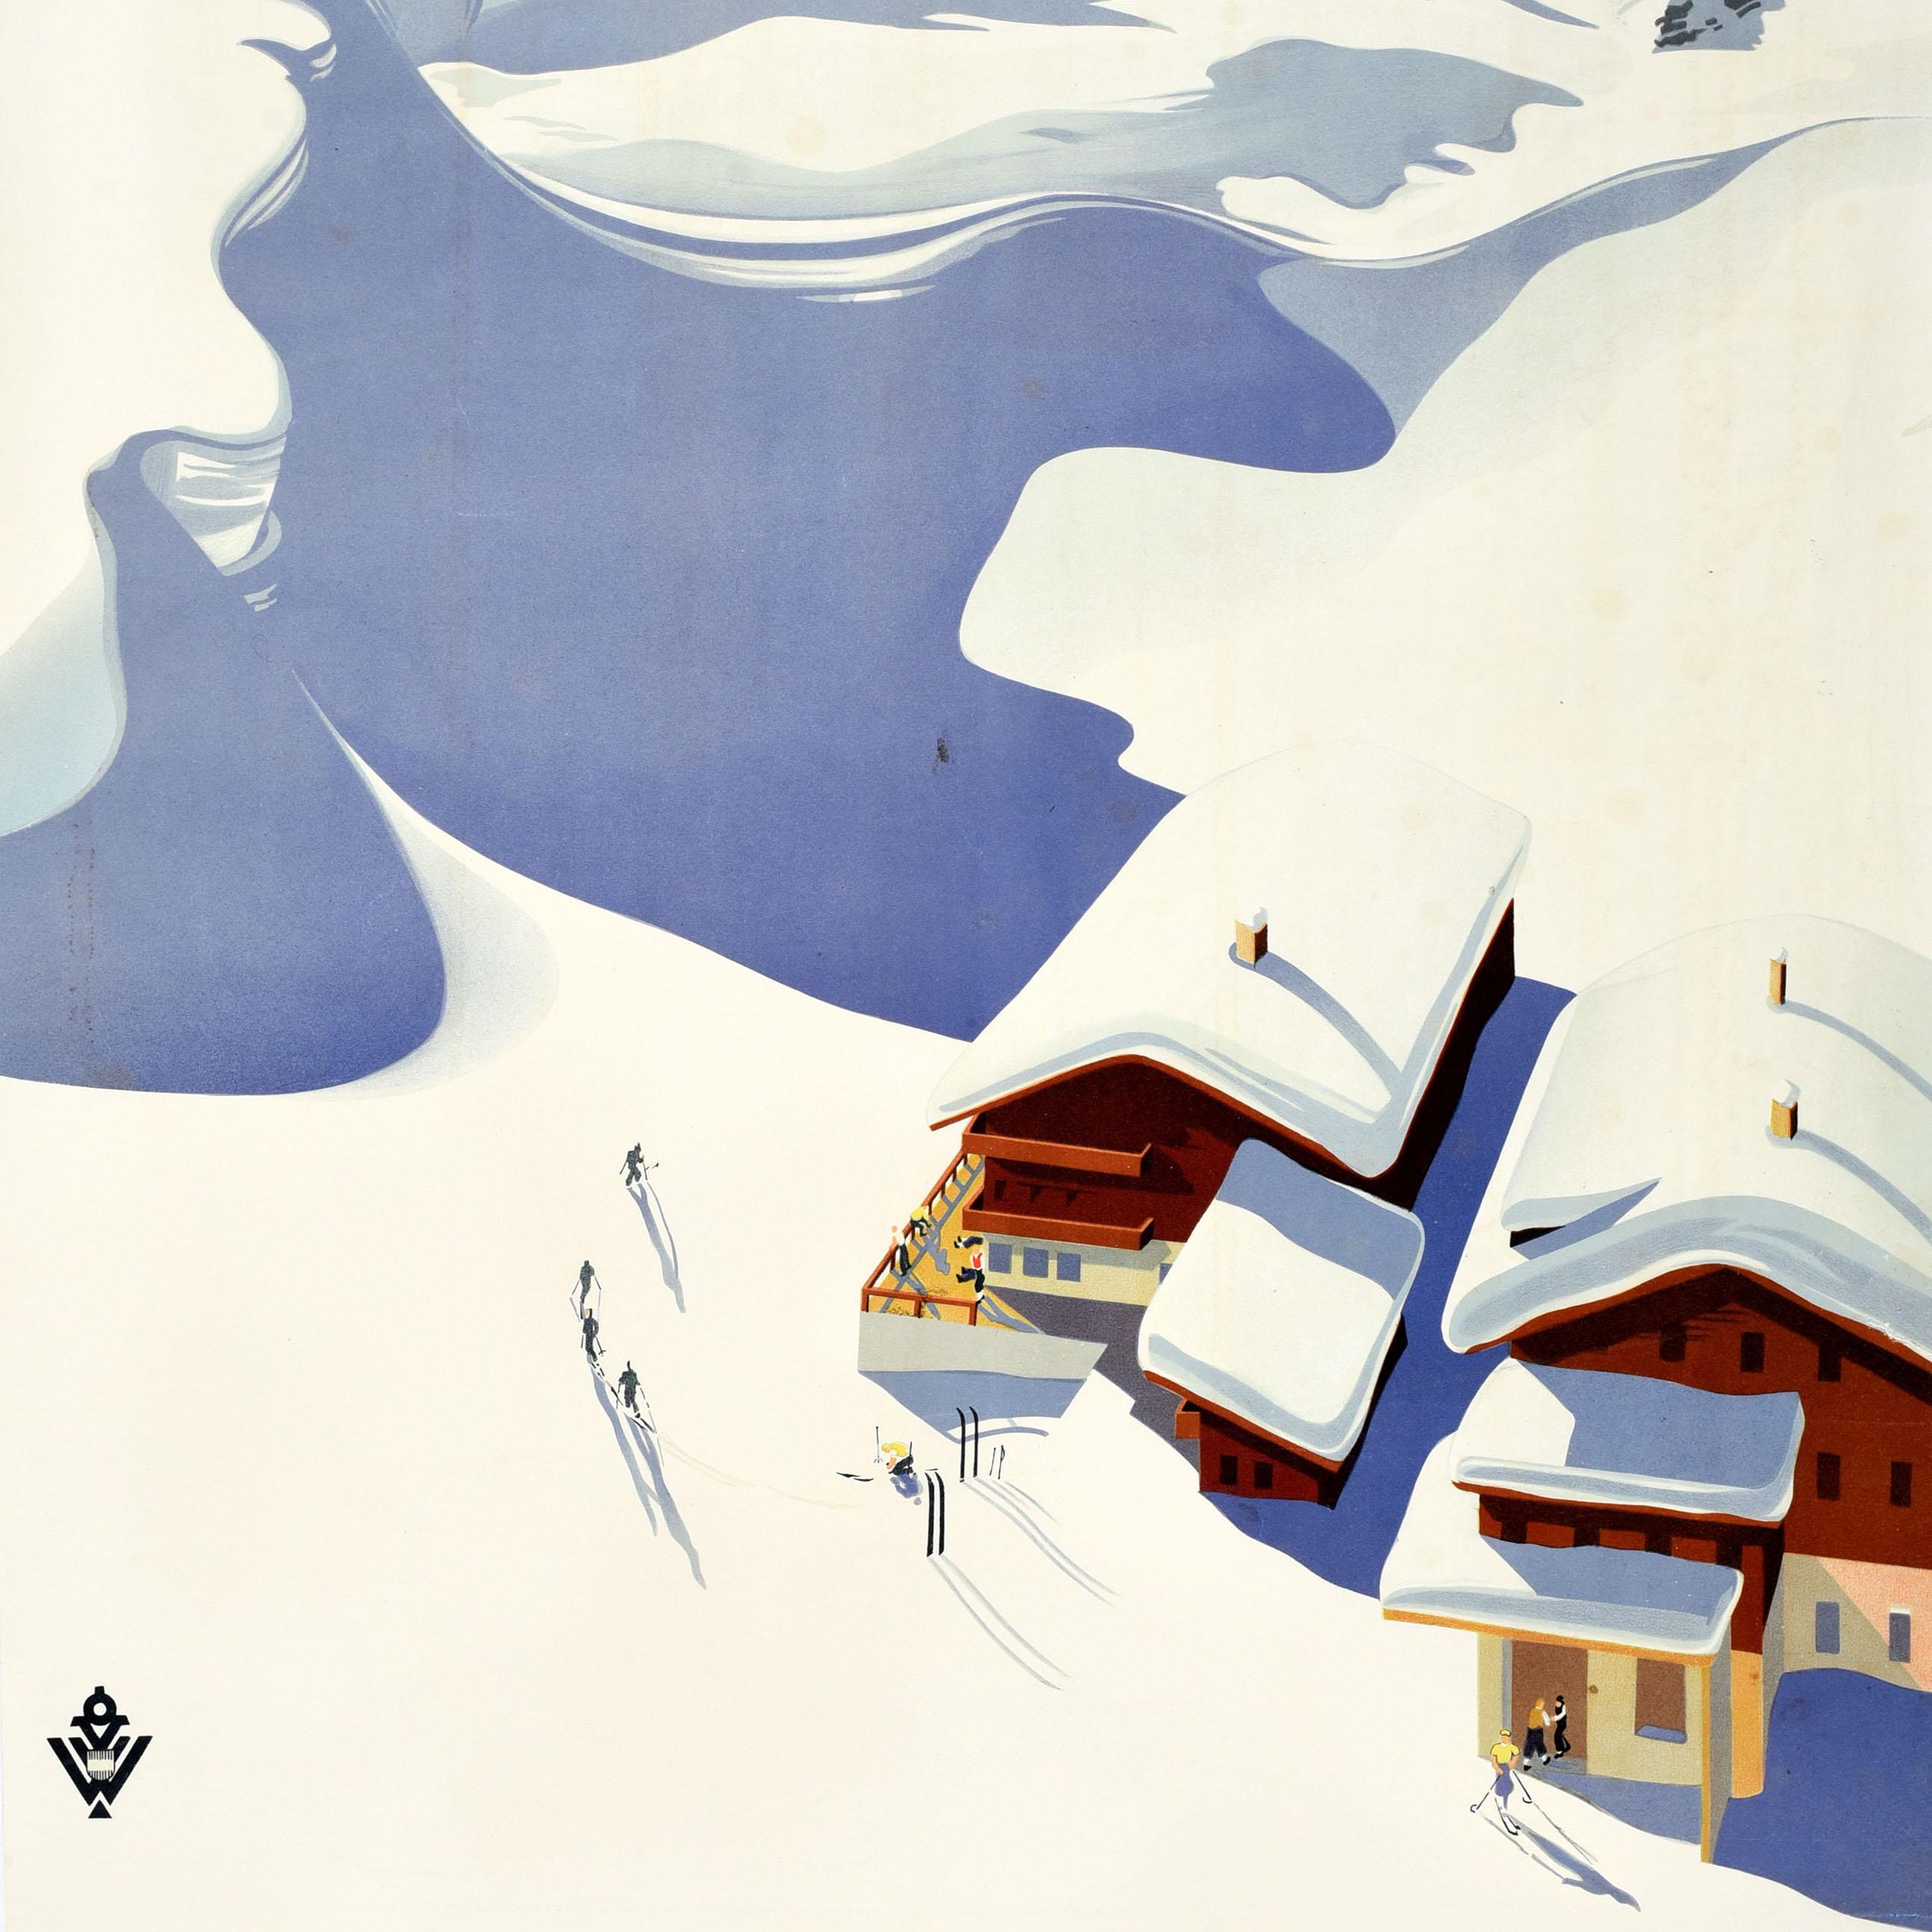 Original Vintage Wintersport und Skifahren Reiseplakat für Österreich mit atemberaubenden Kunstwerk von Erich von Wunschheim Darstellung Skifahrer auf einem verschneiten Berg neben Schnee gekrönt Chalets mit Menschen auf der Terrasse und Skier in